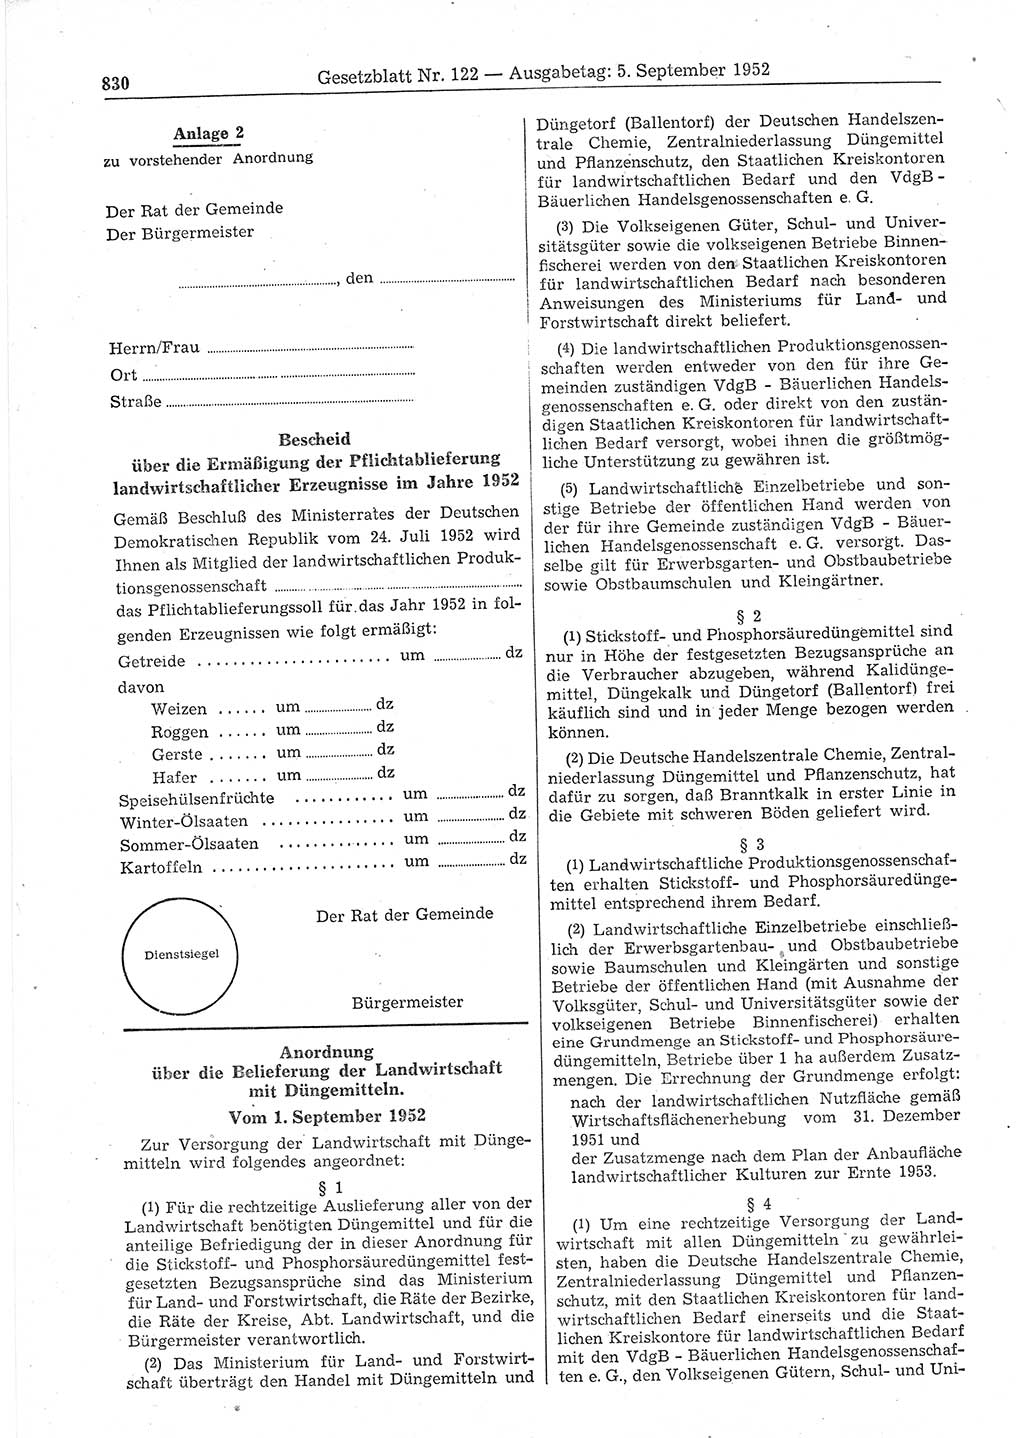 Gesetzblatt (GBl.) der Deutschen Demokratischen Republik (DDR) 1952, Seite 830 (GBl. DDR 1952, S. 830)